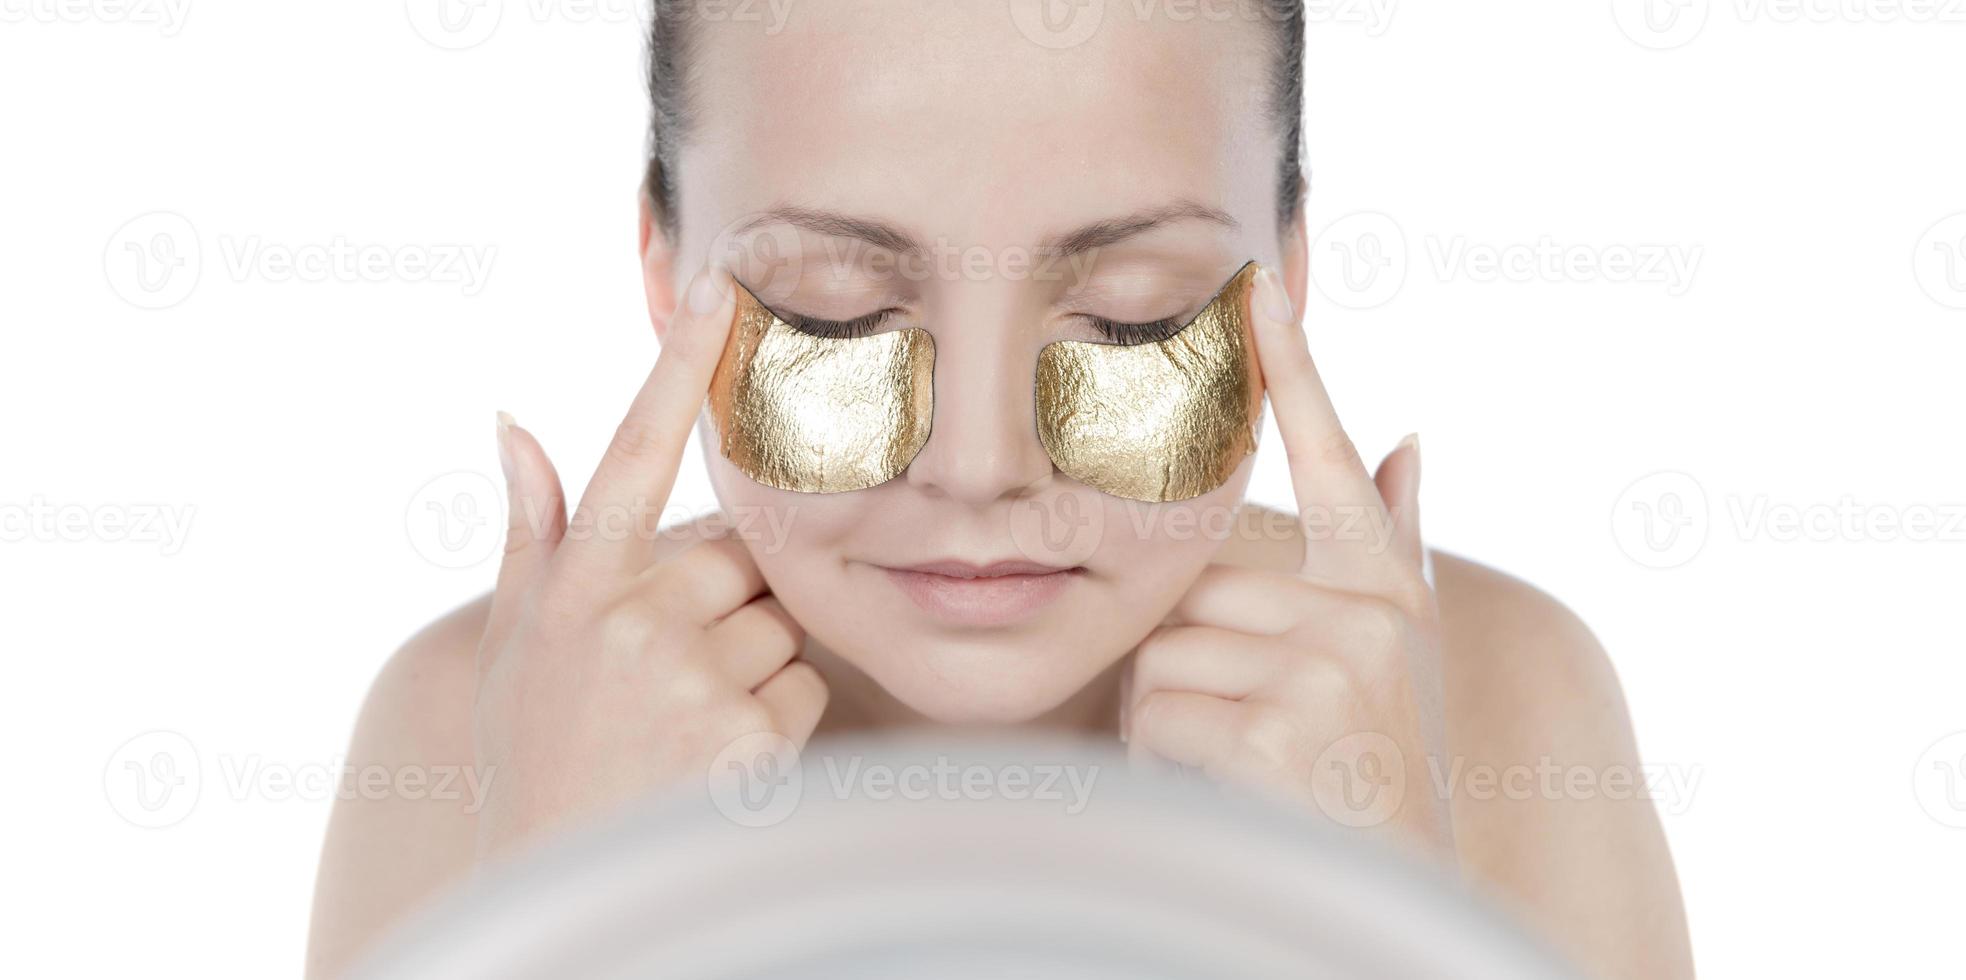 máscara de ouro de mulher, bela modelo com cosmético de pele dourada, cuidados com a pele e tratamento de beleza foto